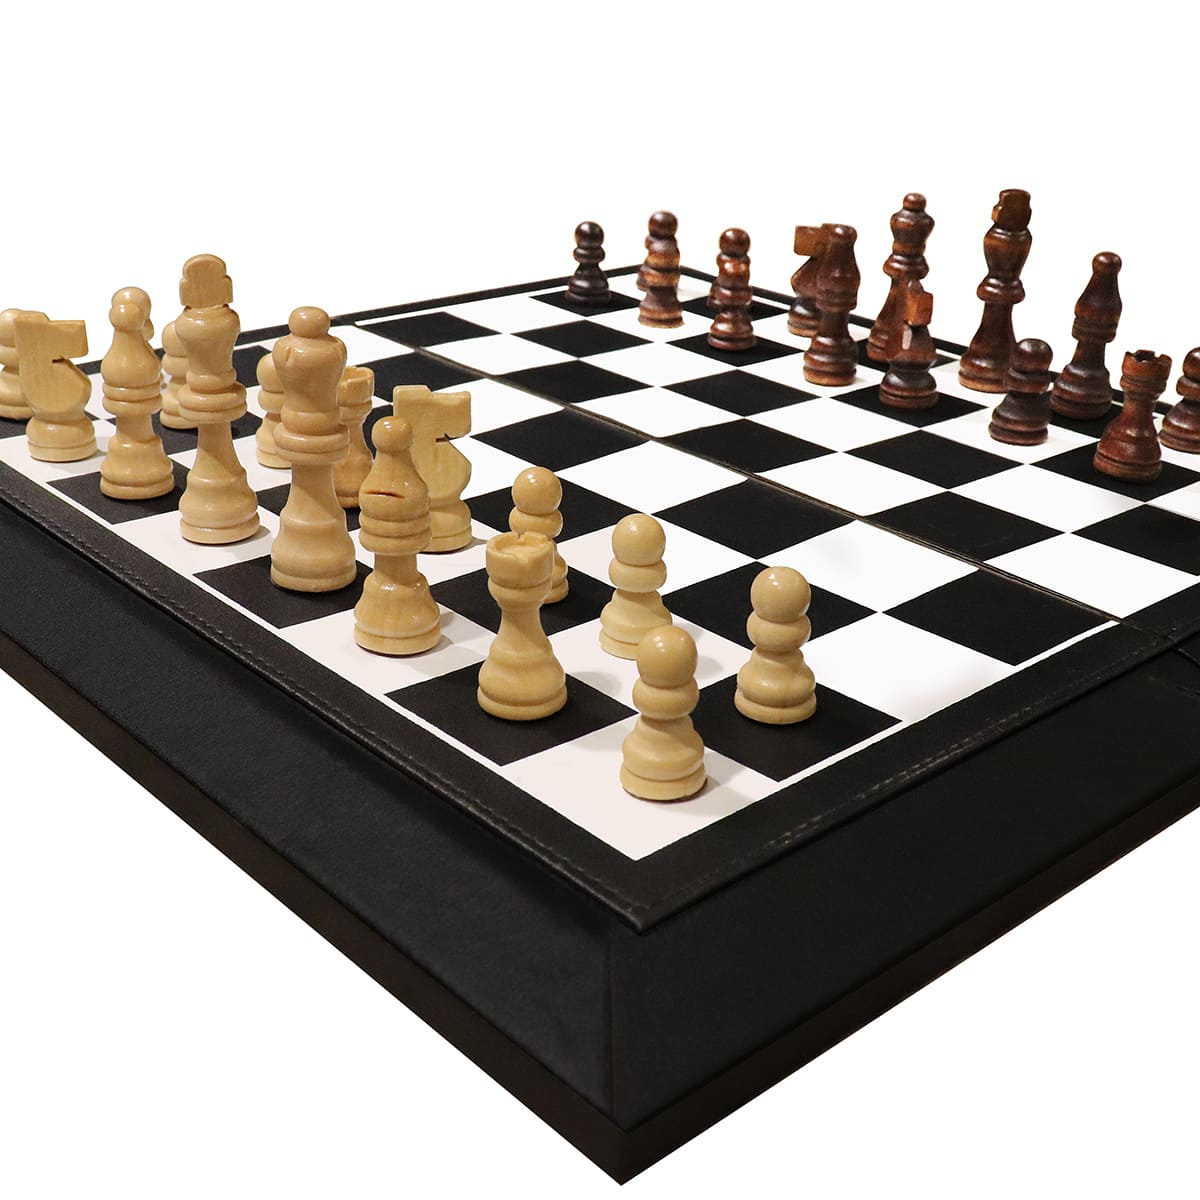 Schach-Set Klassisches Brettspiel in magnetischer Reise-Faltbox